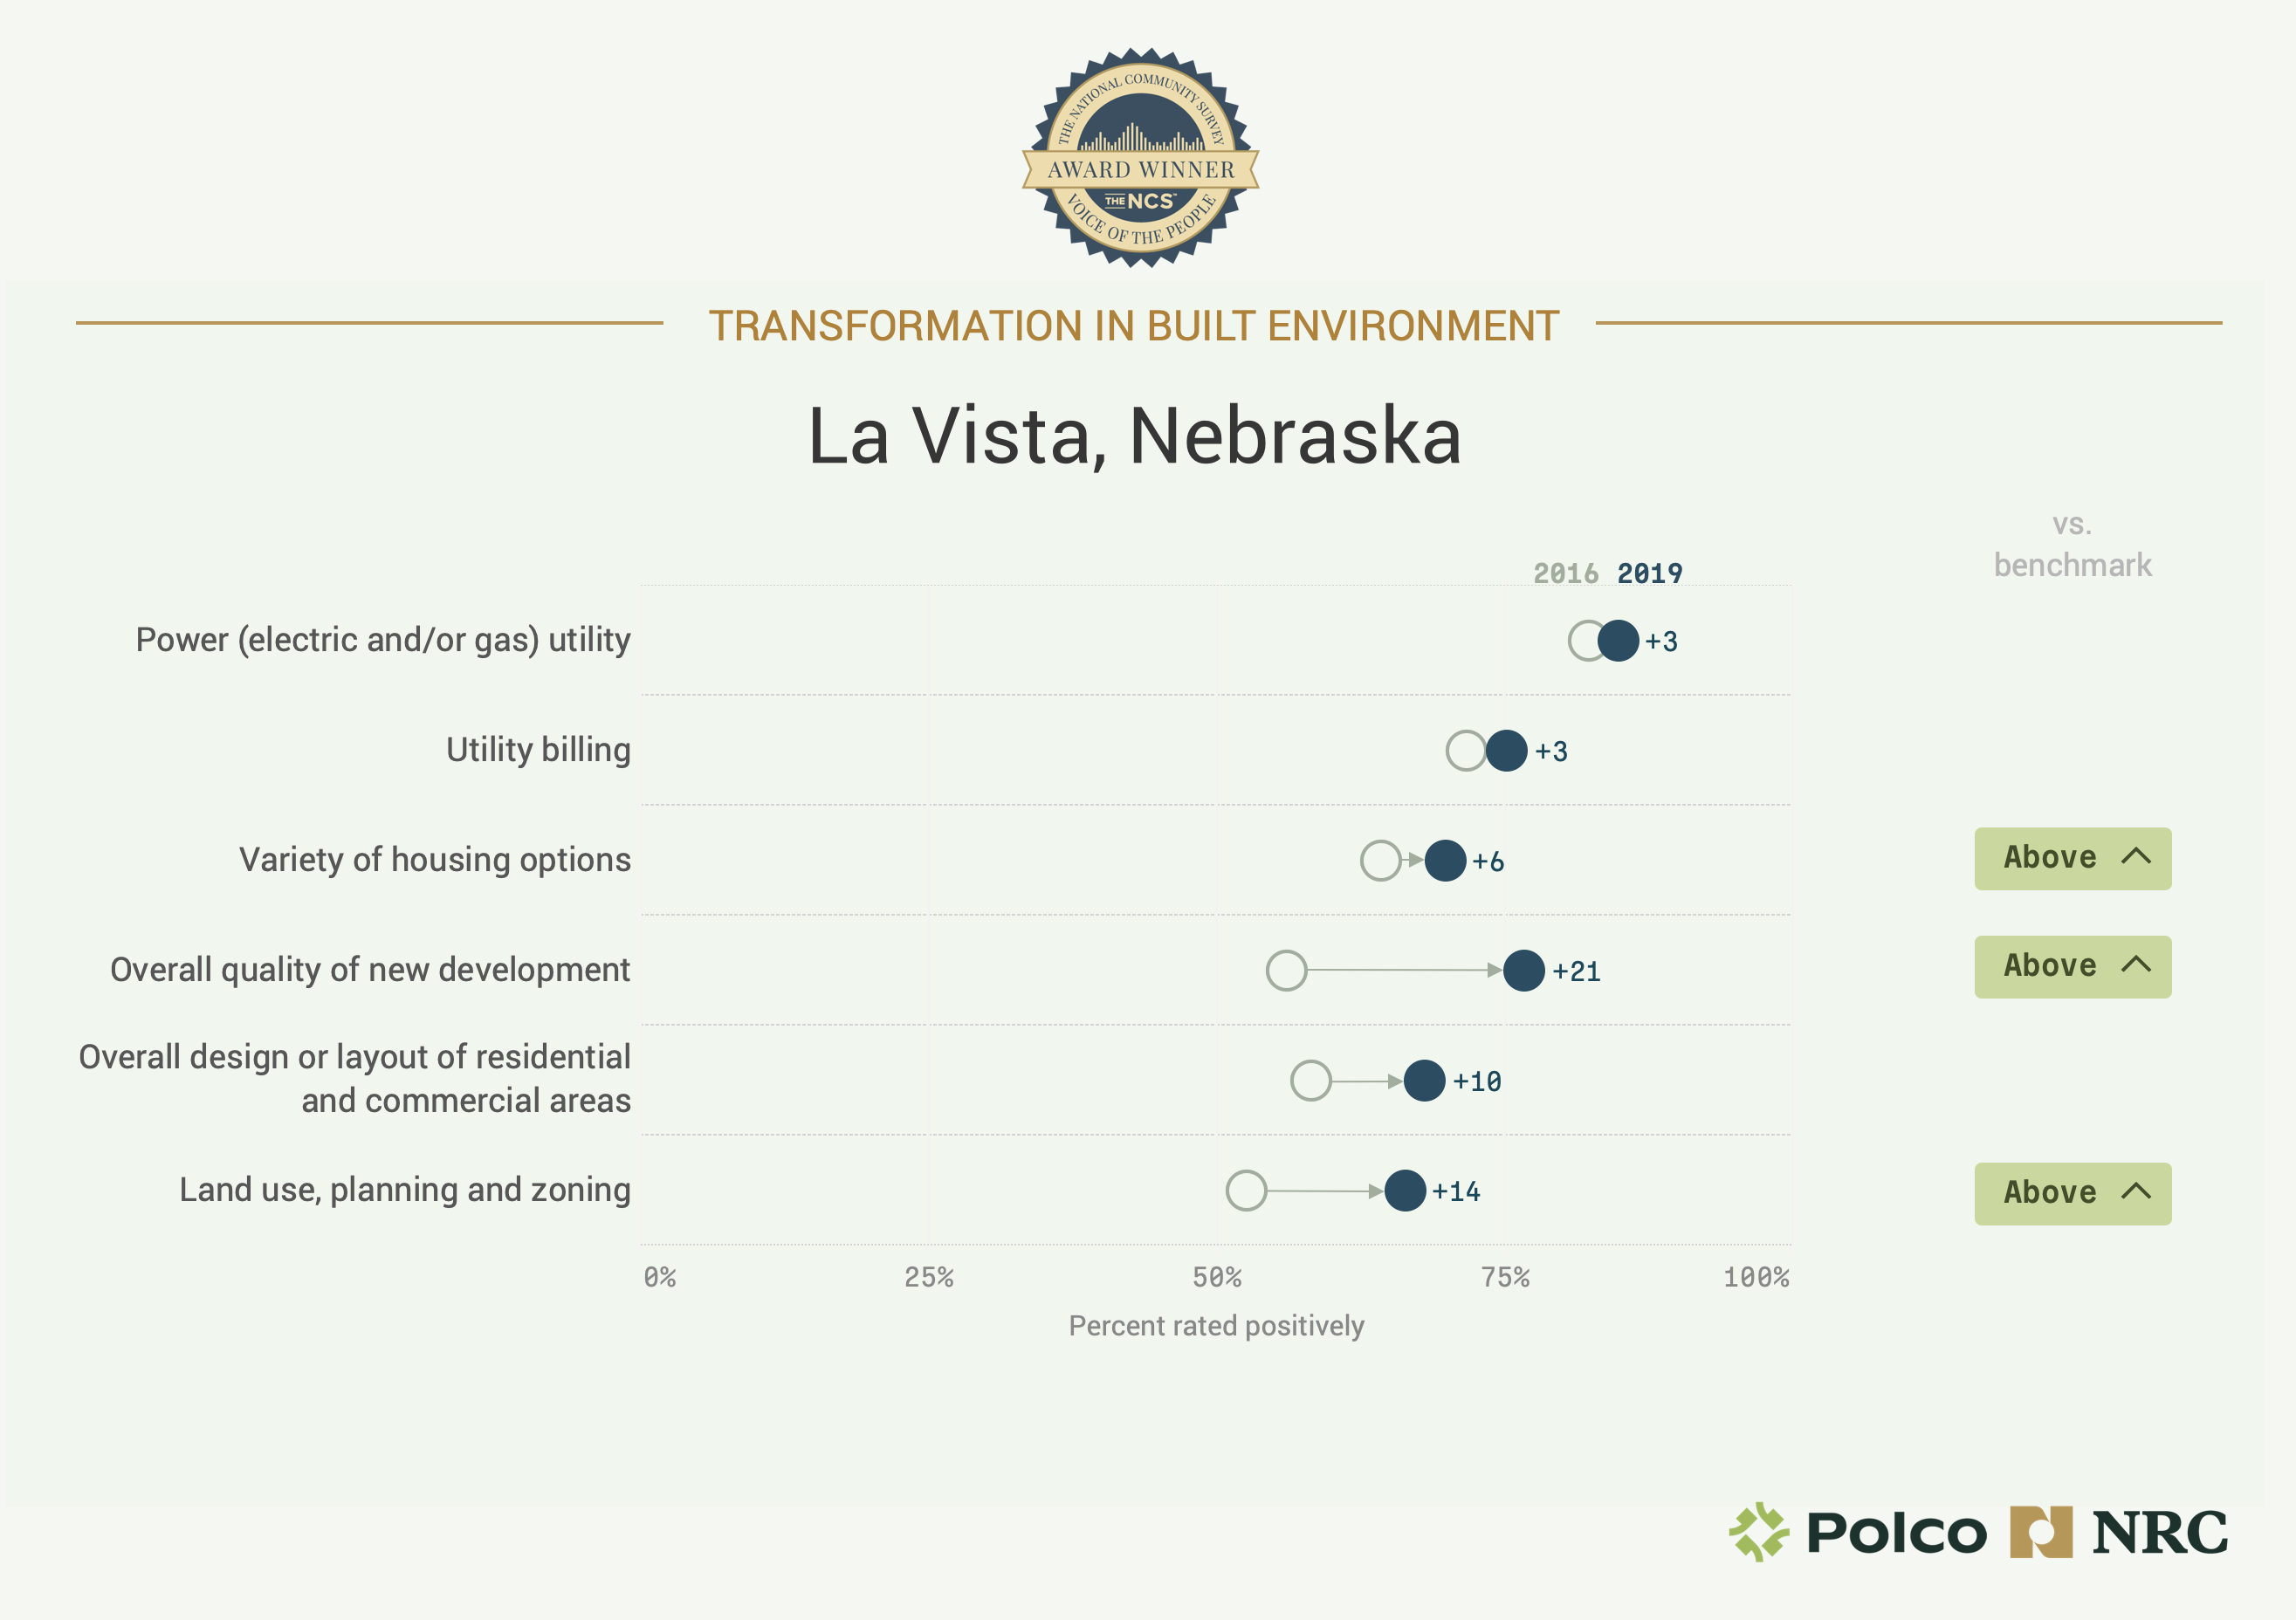 Chart showing La Vista, Nebraska's Transformation in Built Environment